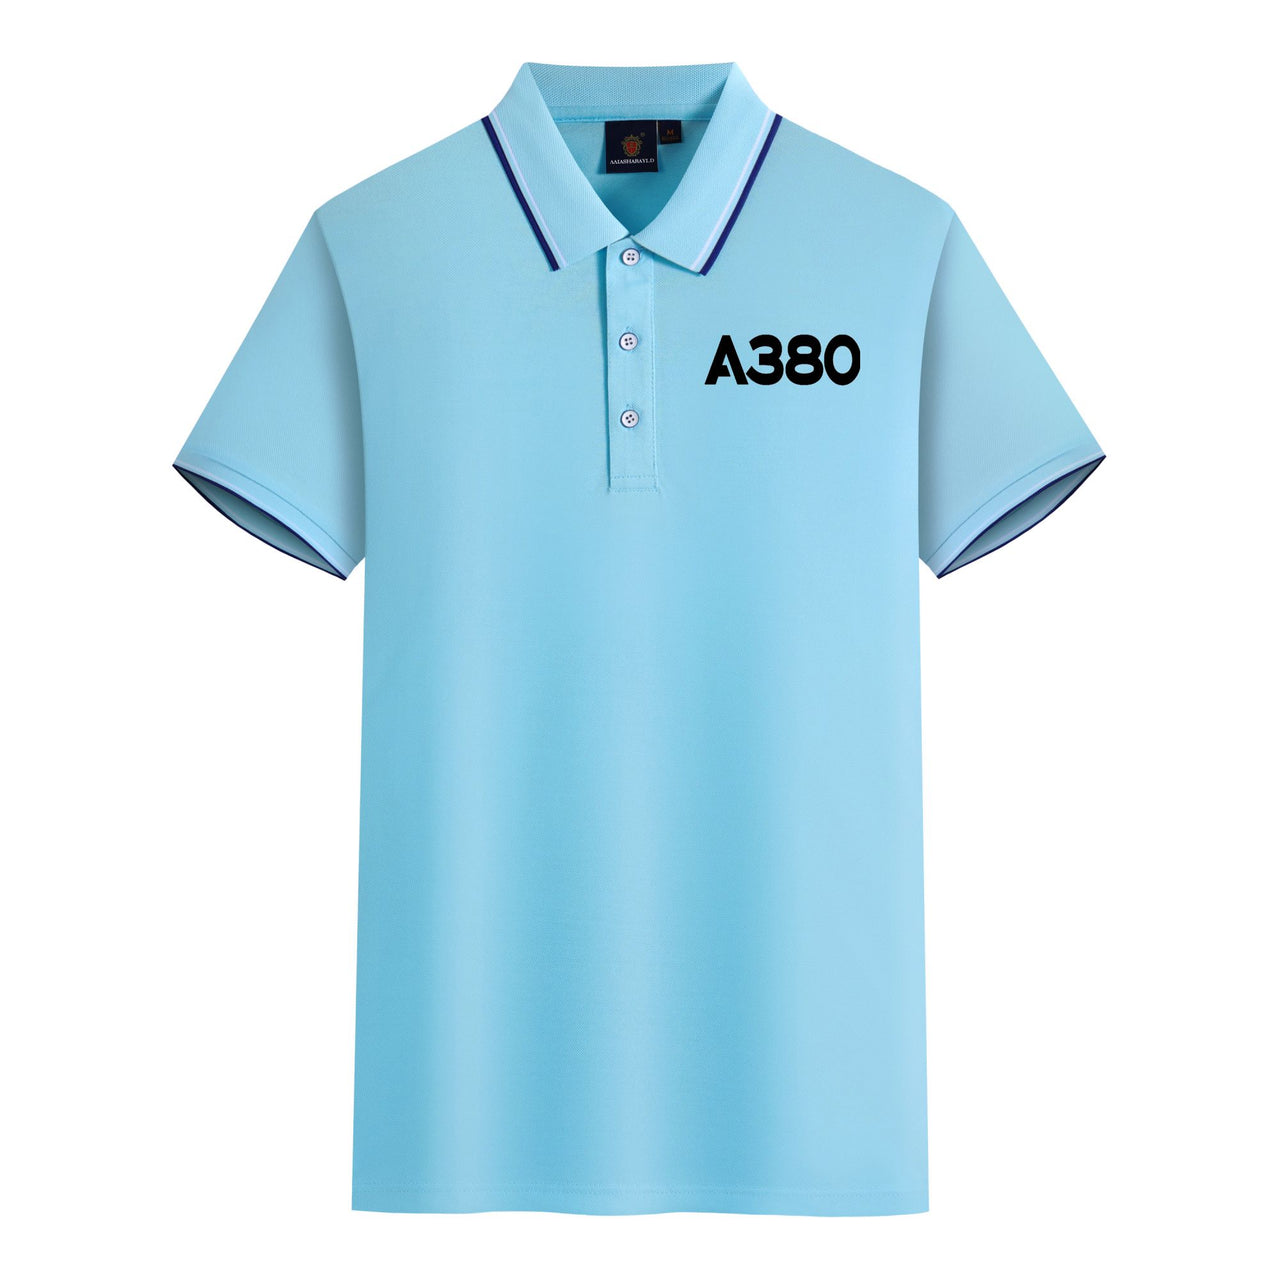 A380 Flat Text Designed Stylish Polo T-Shirts